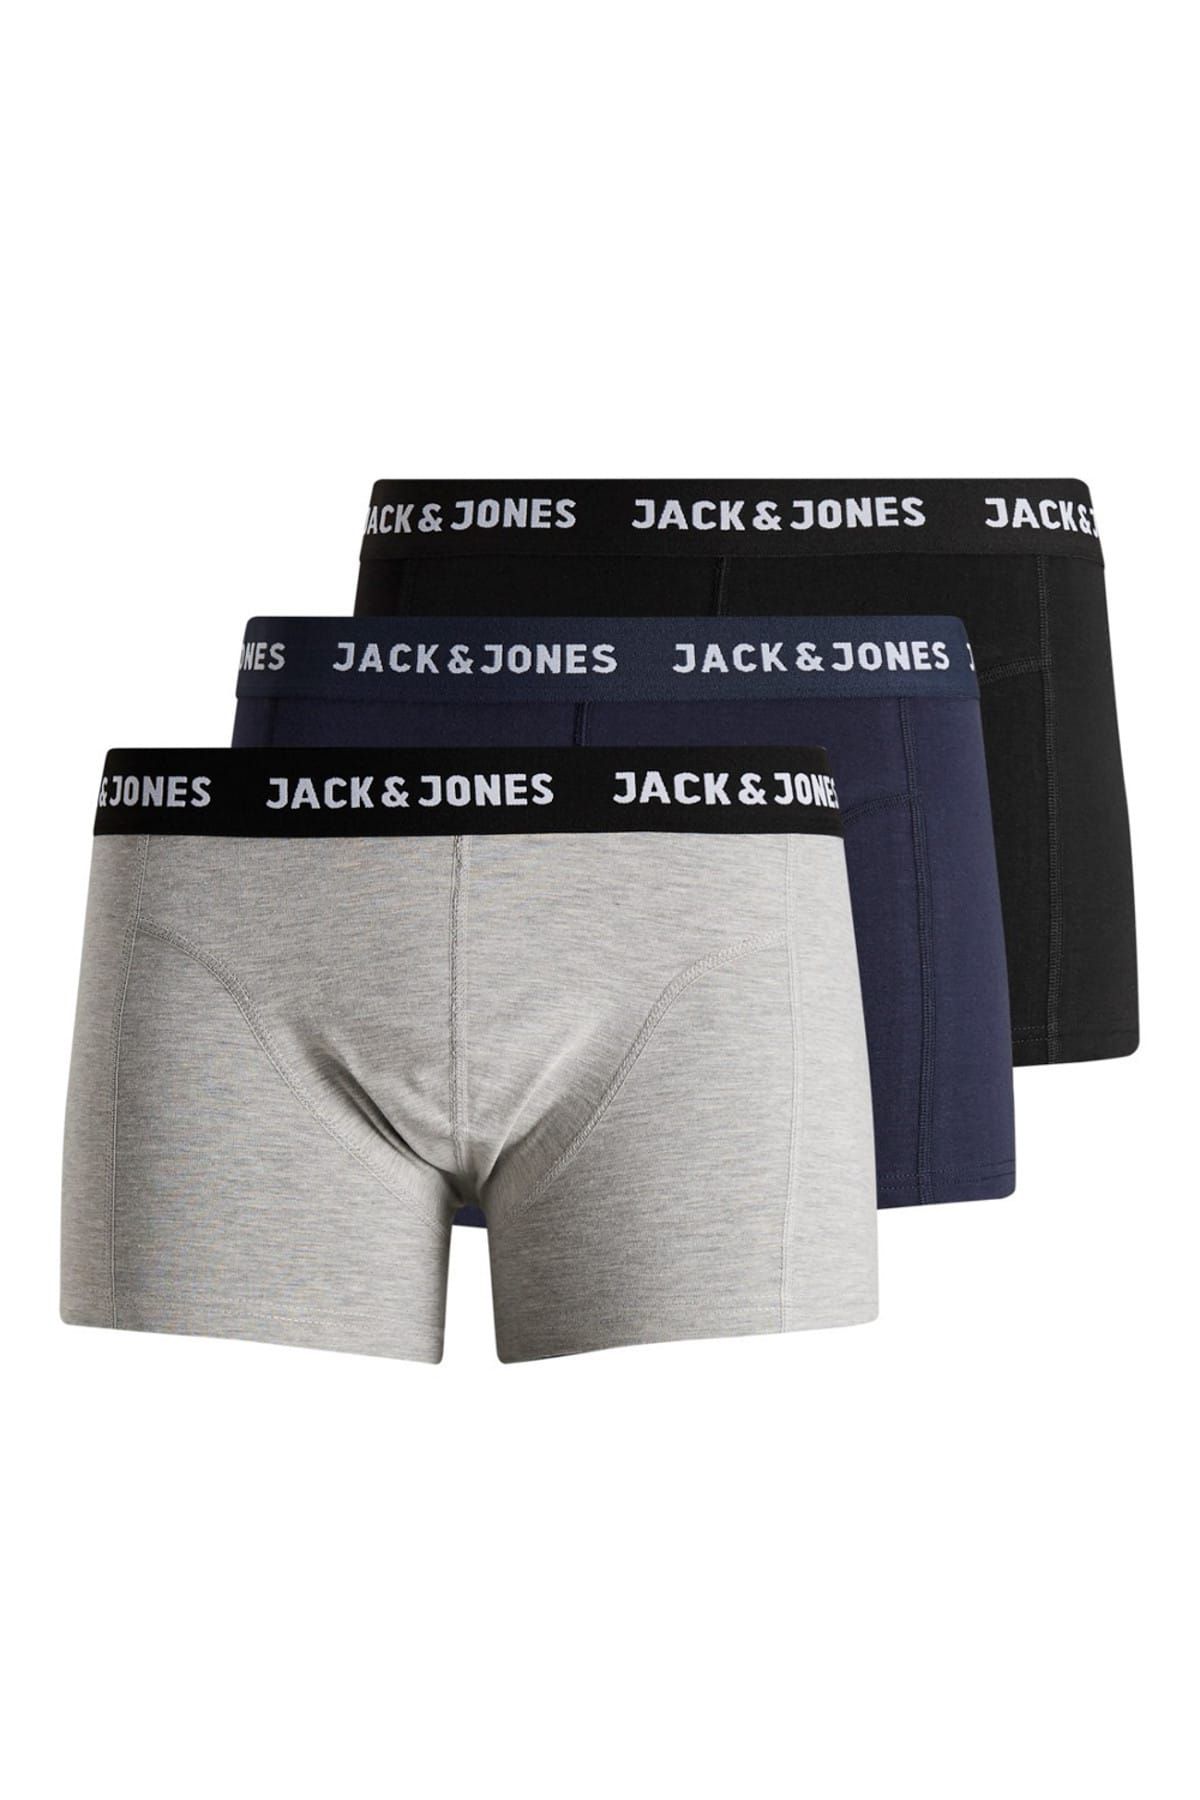 Jack & Jones Erkek Boxer - 3'Lü 12160750